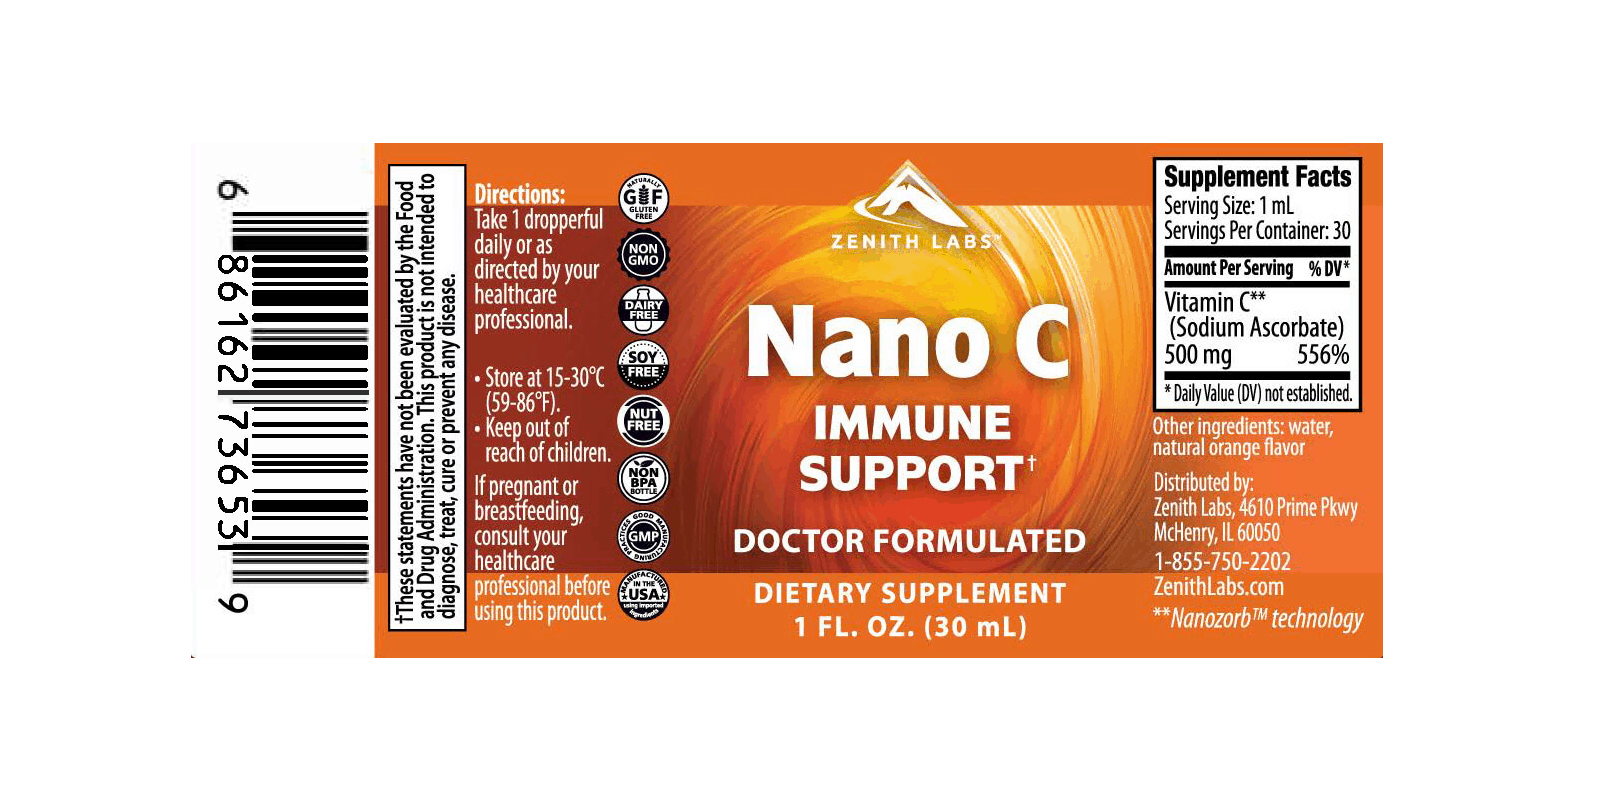 Nano C Immune Support dosage